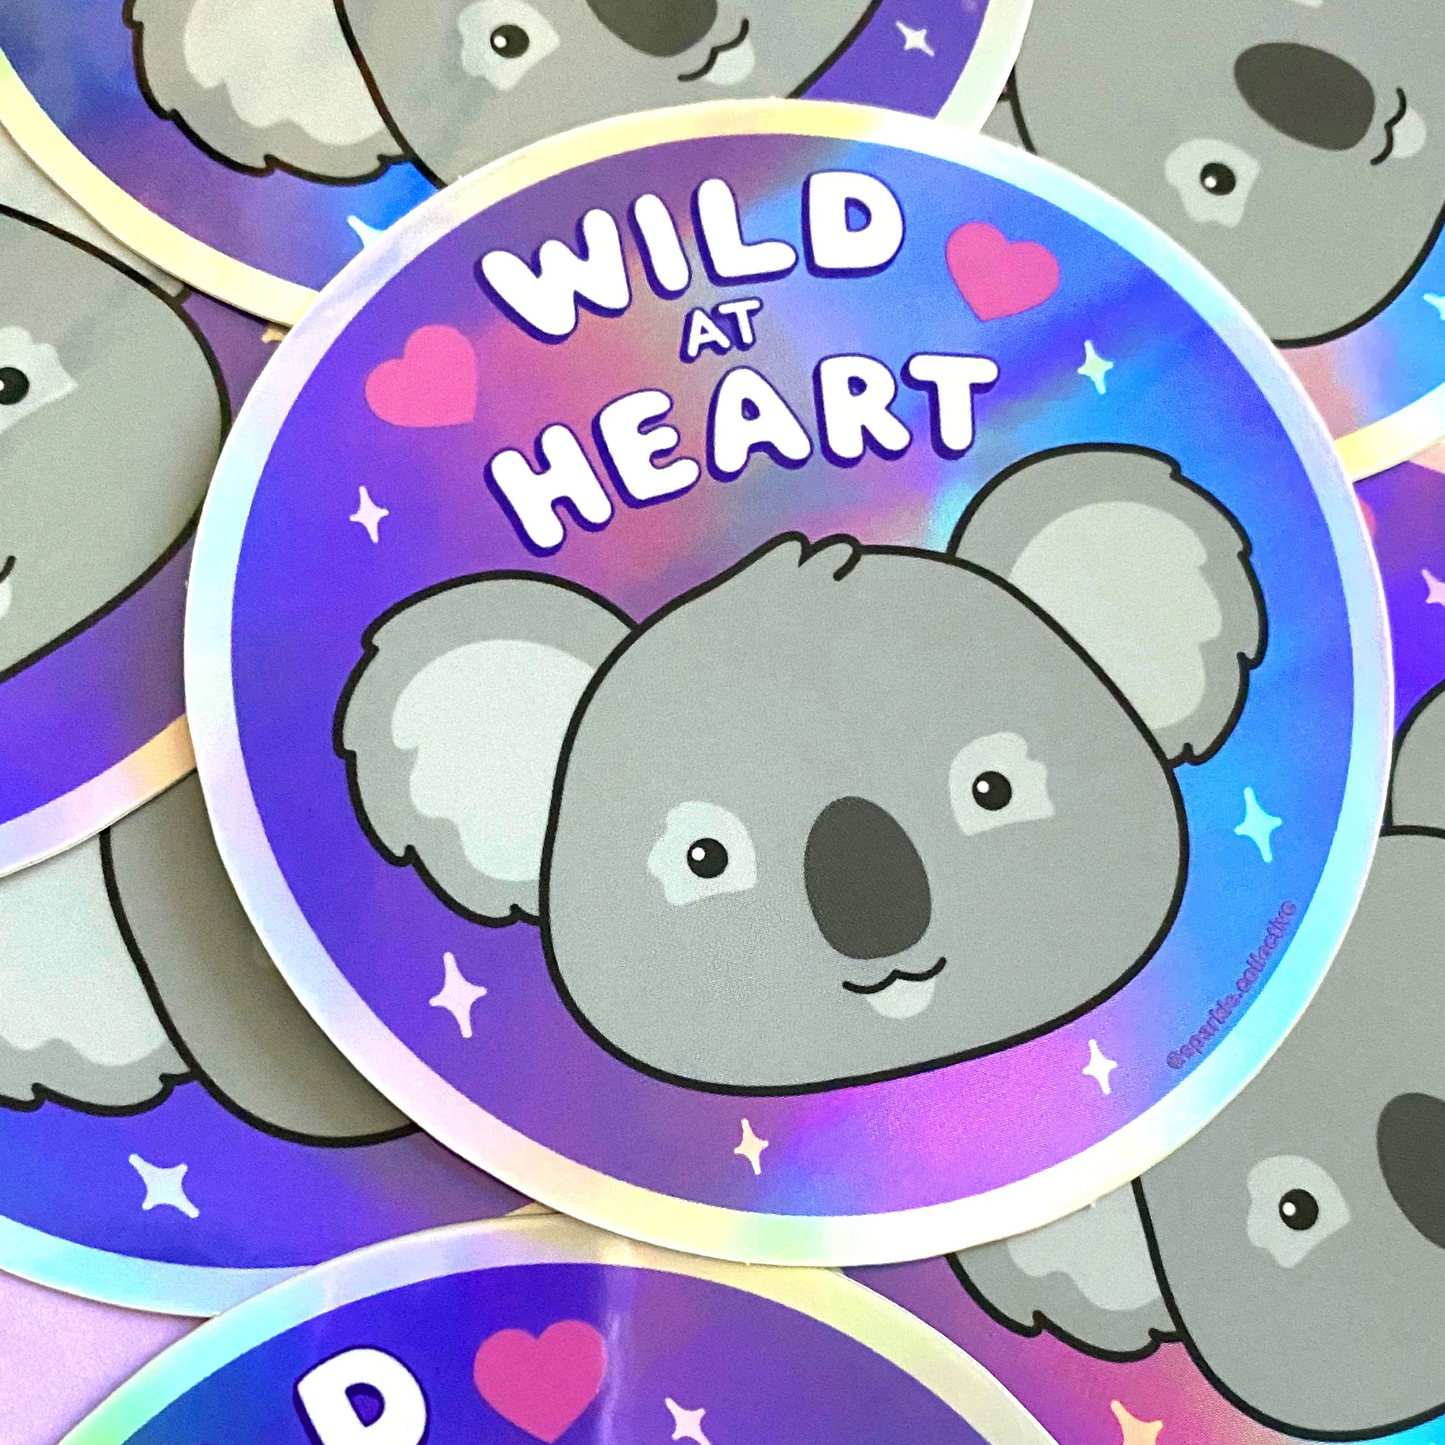 Wild at Heart Koala Vinyl Sticker